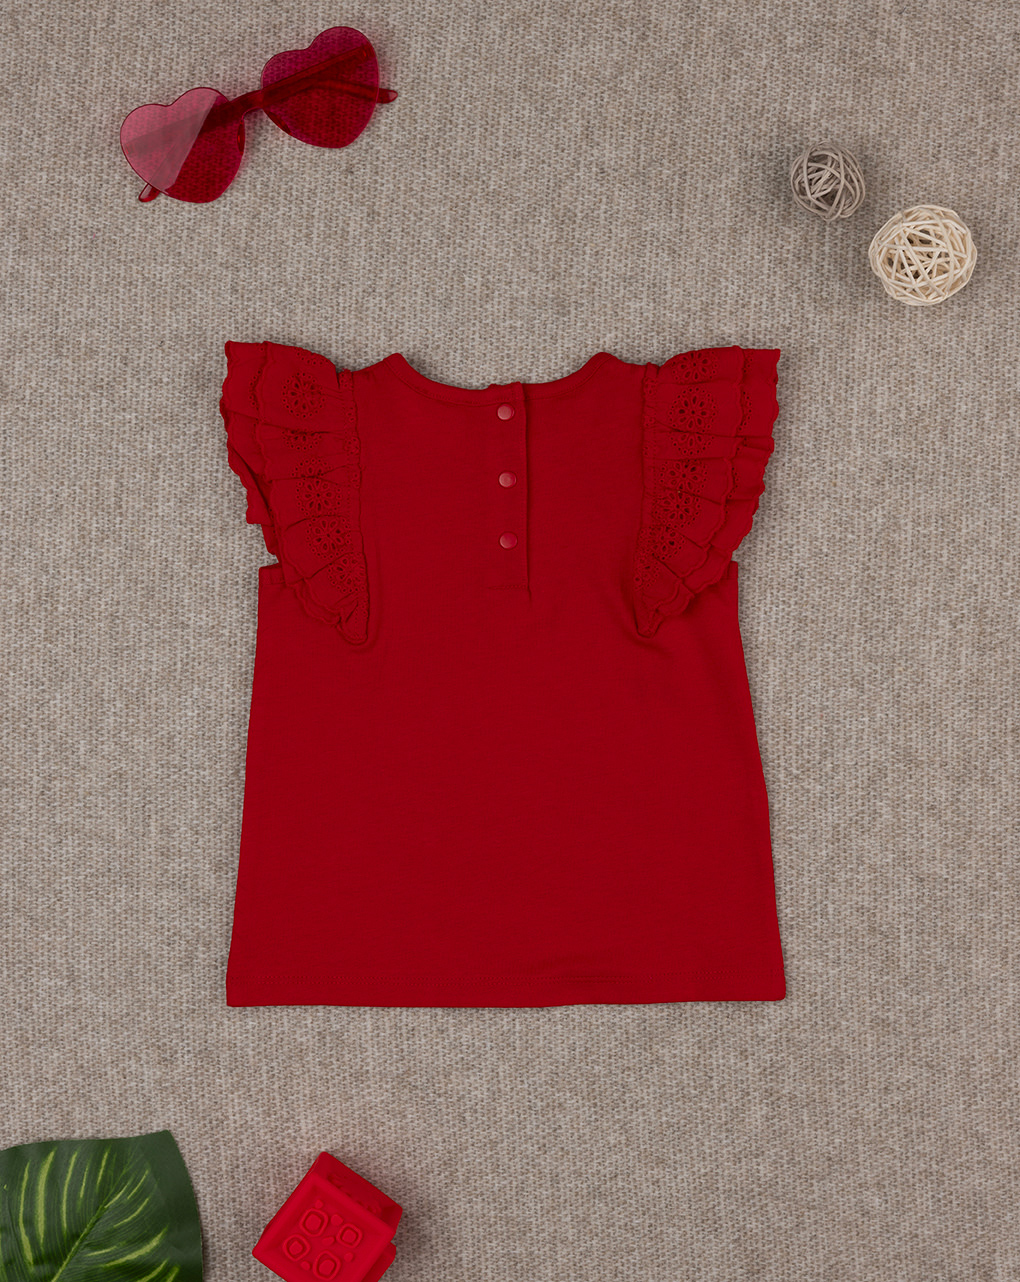 βρεφικό t-shirt κόκκινο με δαντέλα sangallo για κορίτσι - Prénatal